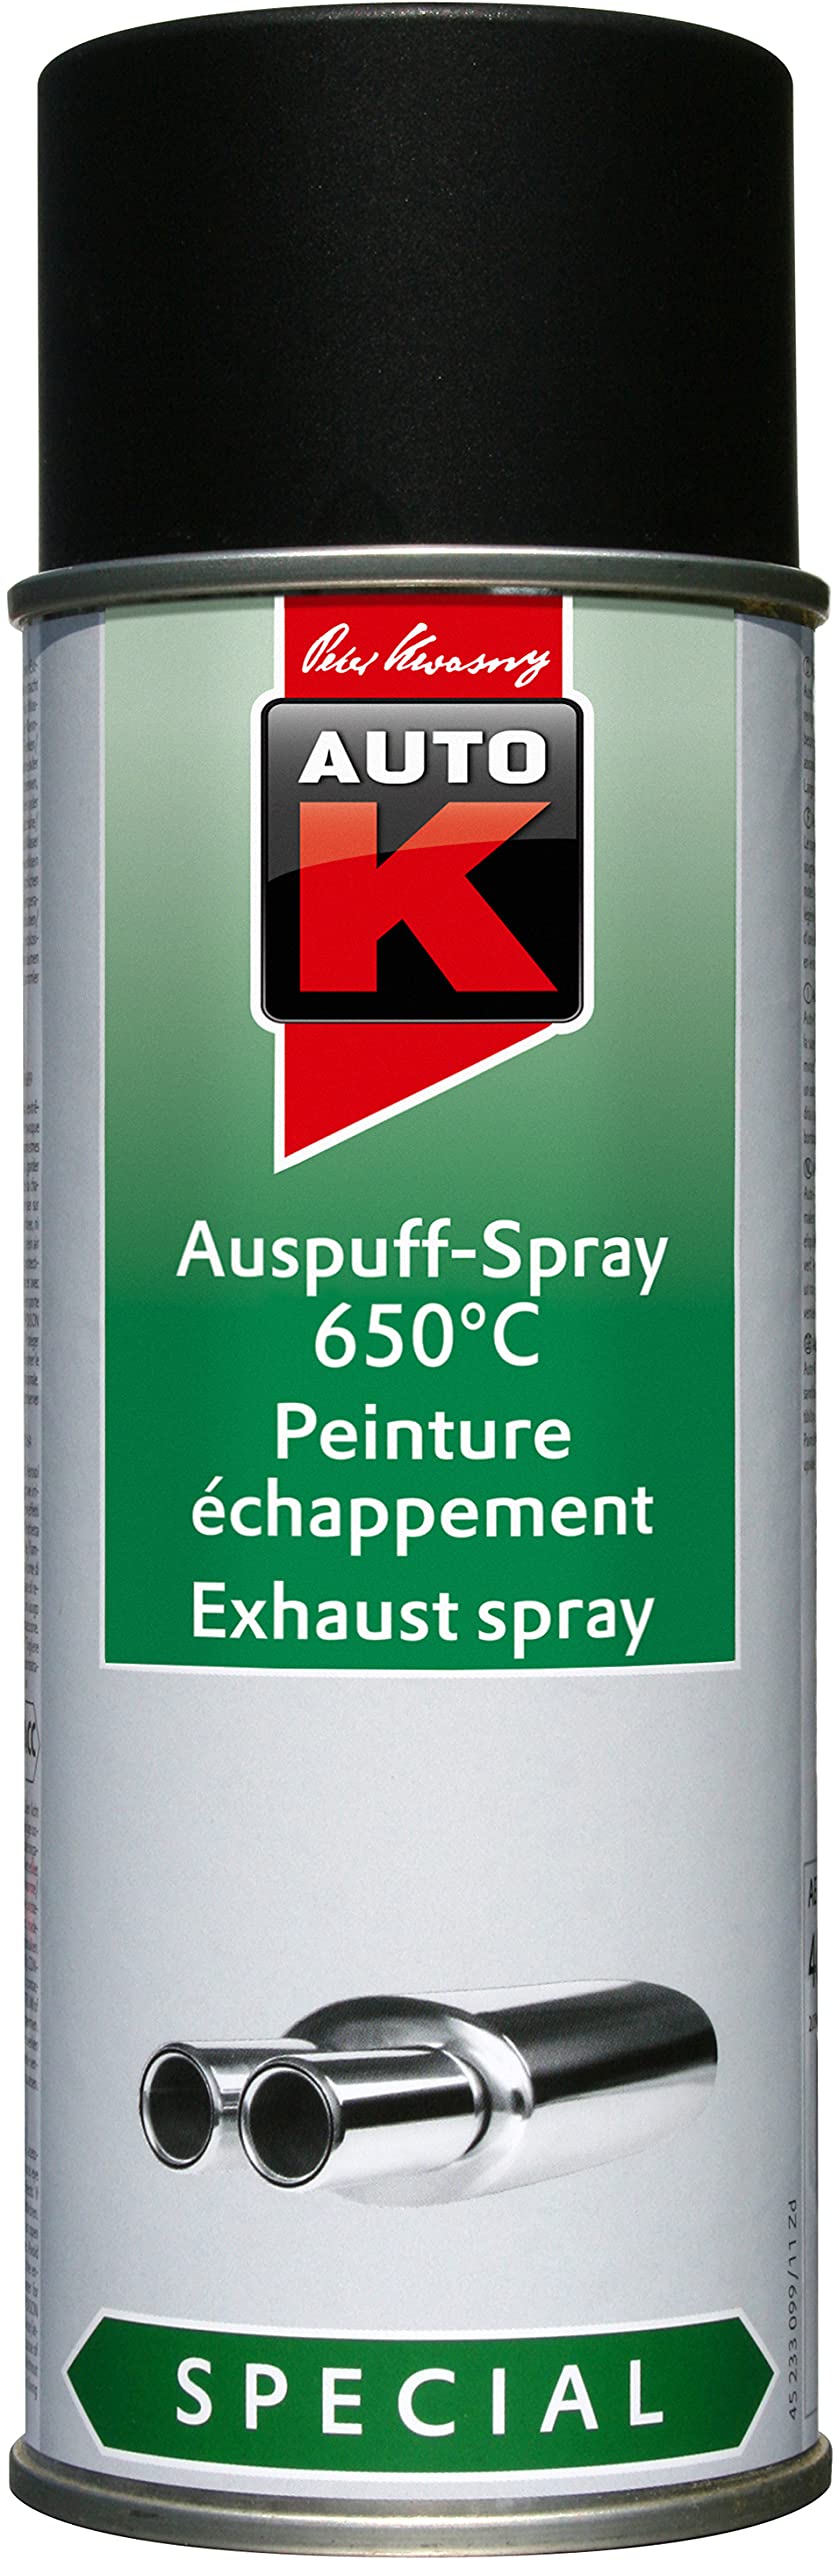 AutoK KWASNY 233 099 Special Auspuff-Spray schwarz 650°C Lackspray 400ml von Auto K